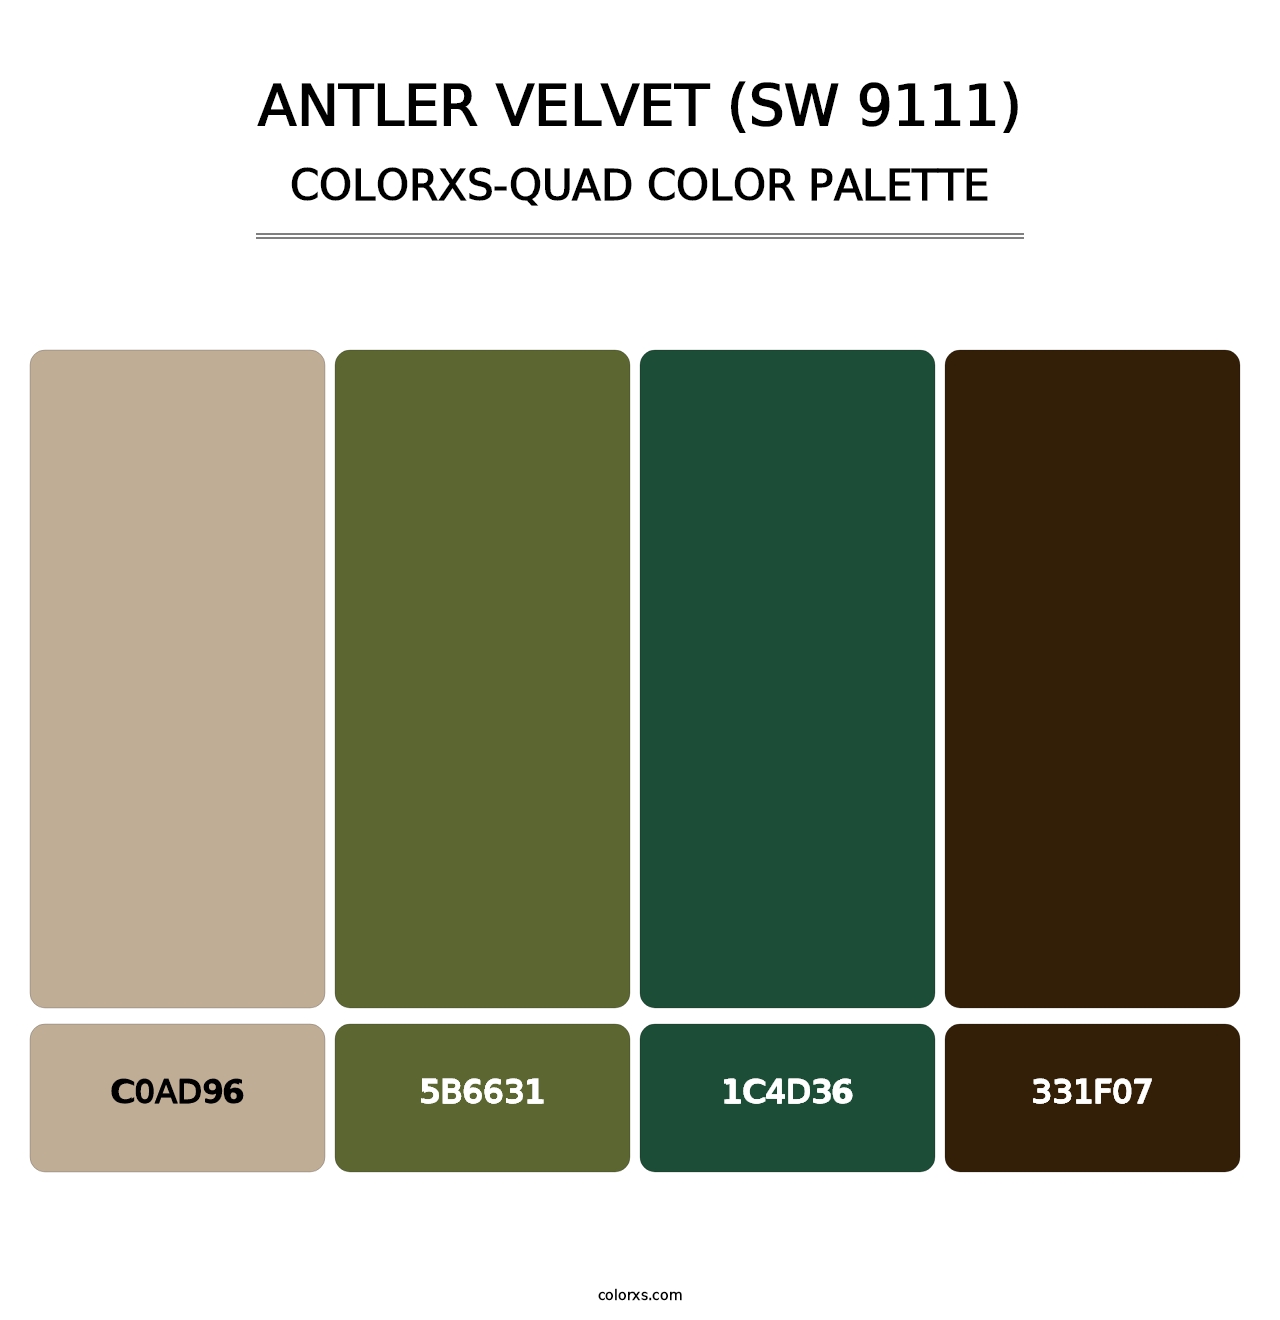 Antler Velvet (SW 9111) - Colorxs Quad Palette